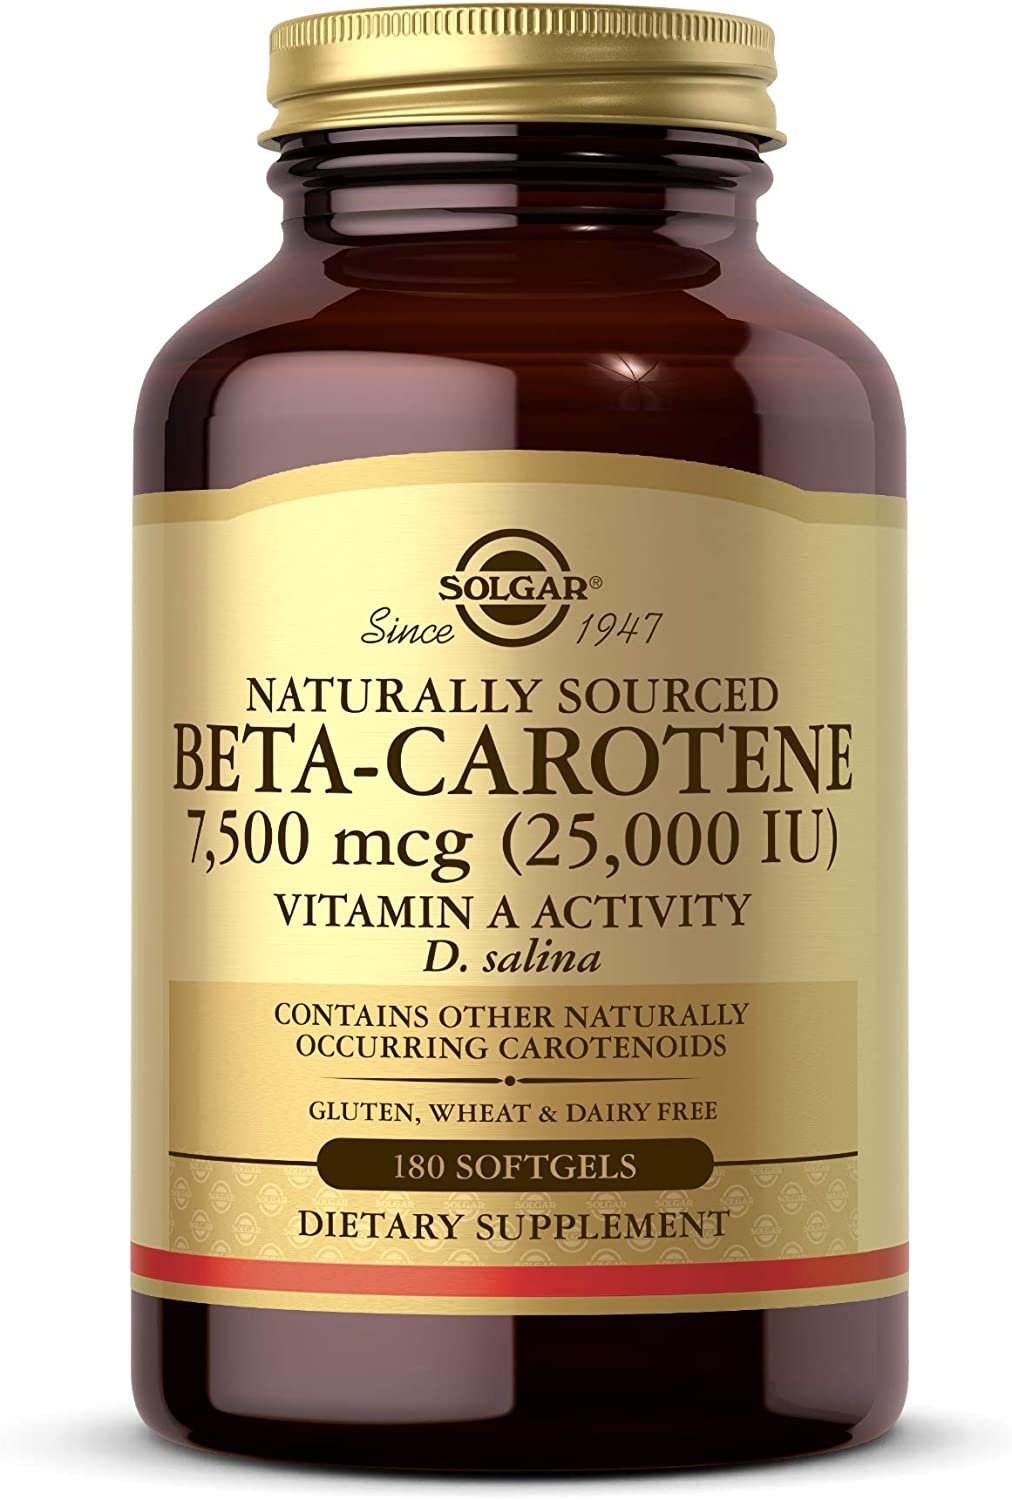 Solgar Oceanic Beta-Carotene 25,000 IU - Healthy Vision, Skin & Immune - 180 ct